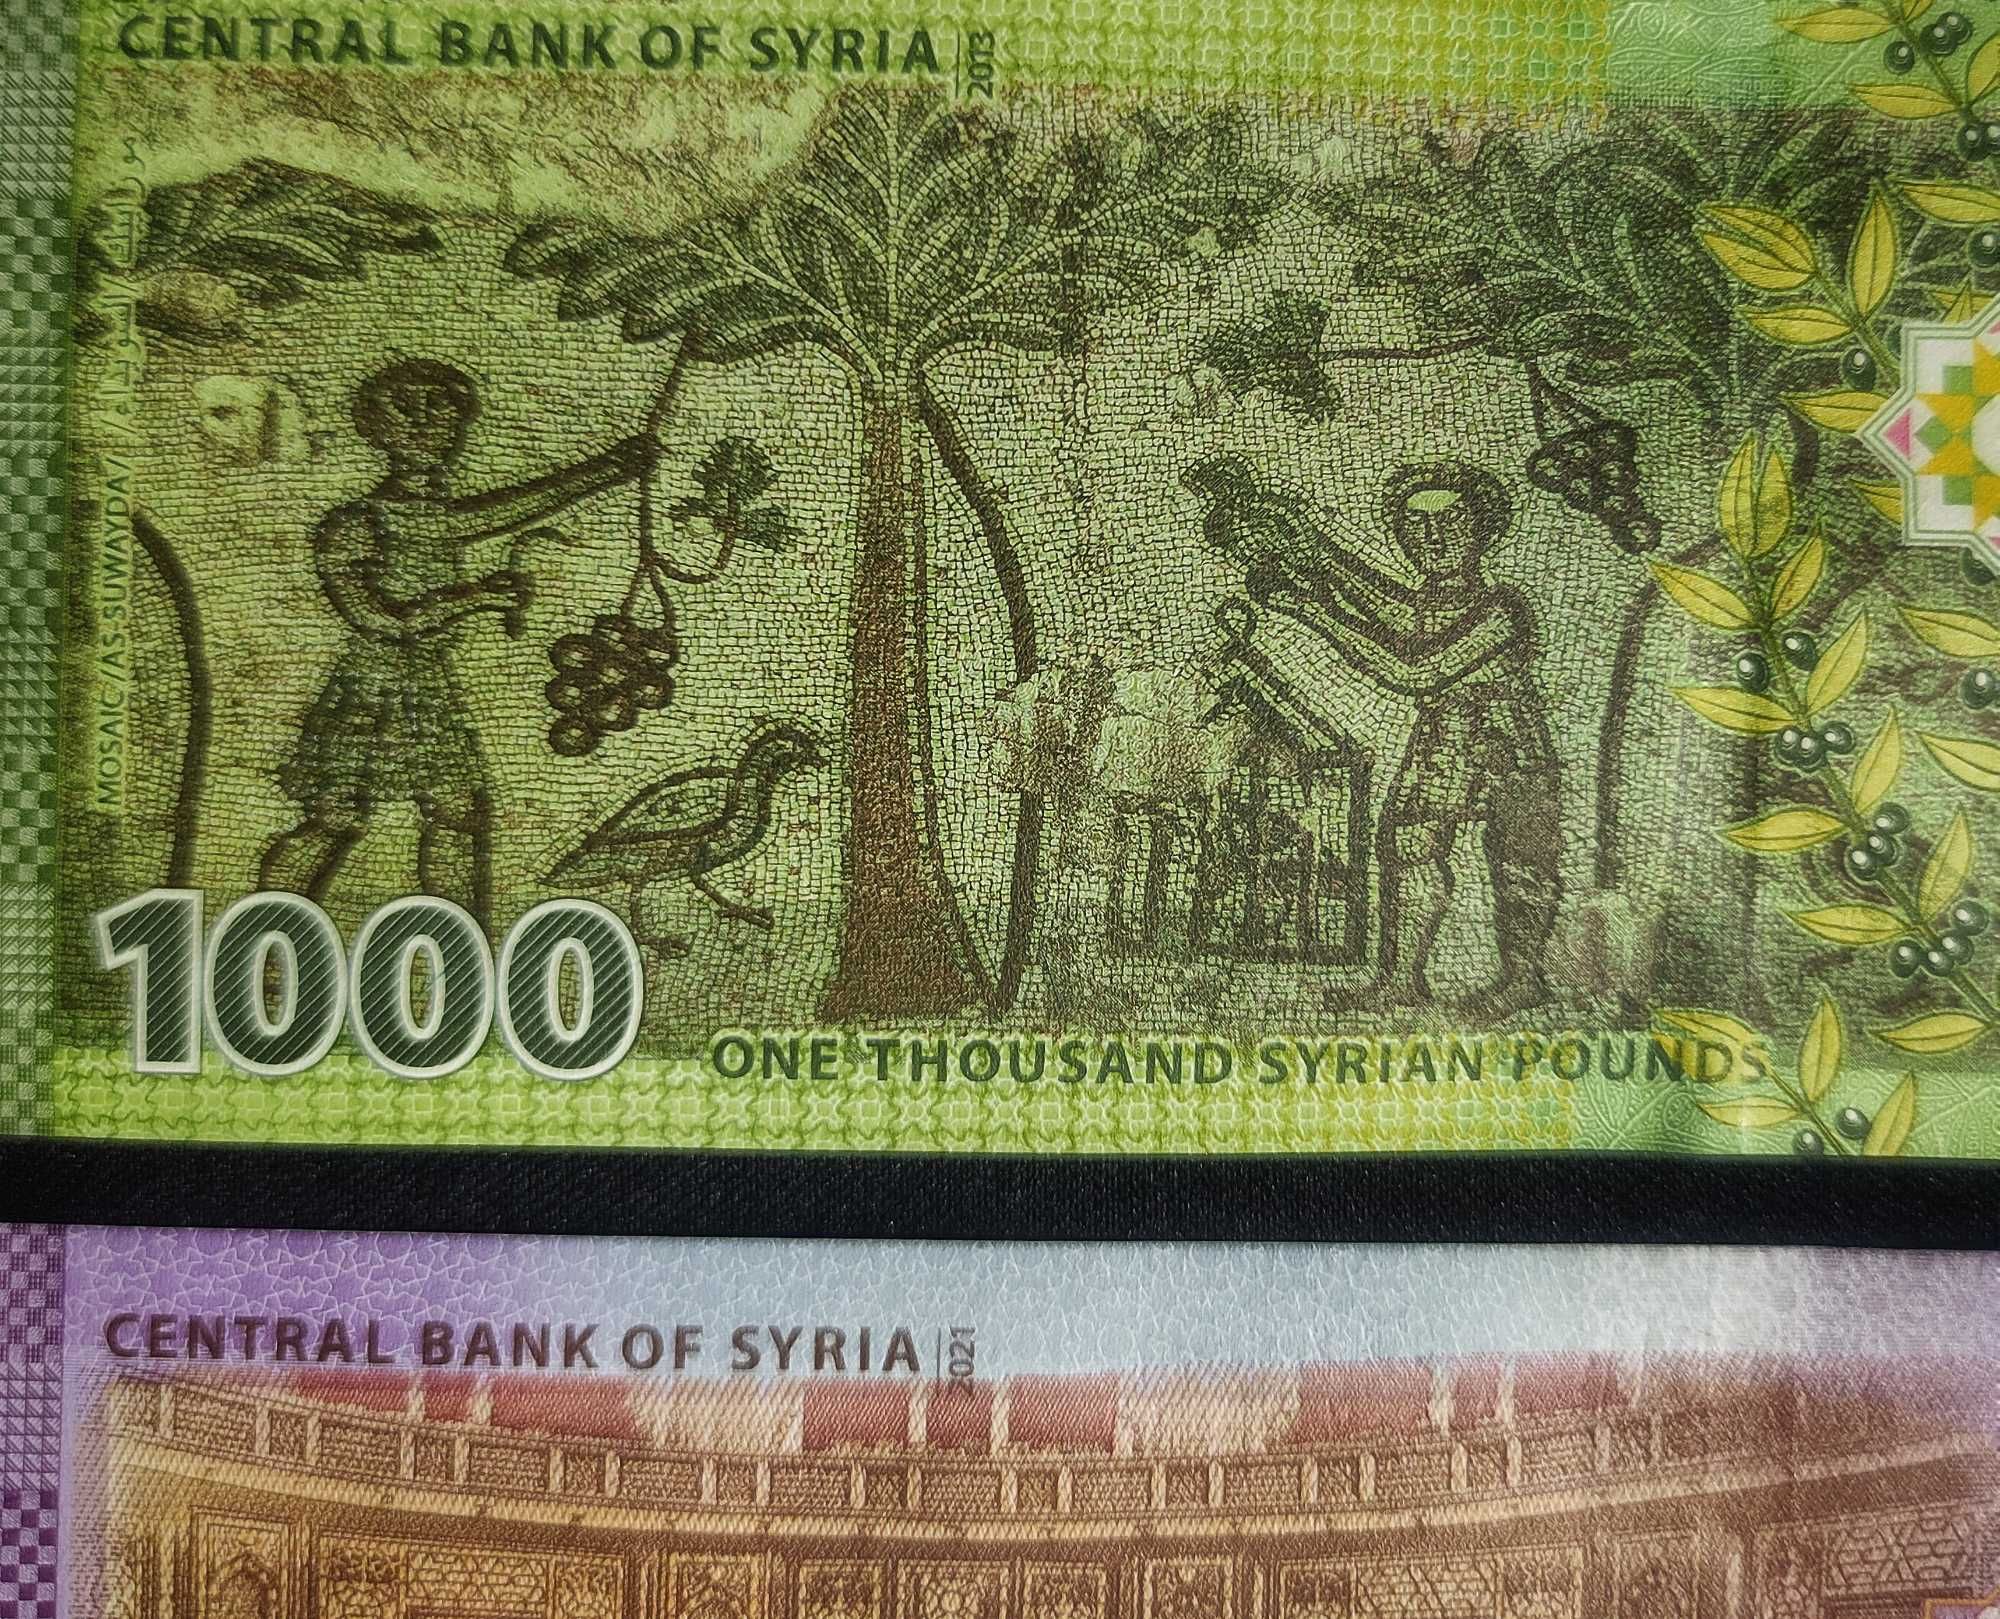 Сирия. Полная Коллекция из 7 Банкнот - Сирийский Фунт. UNC